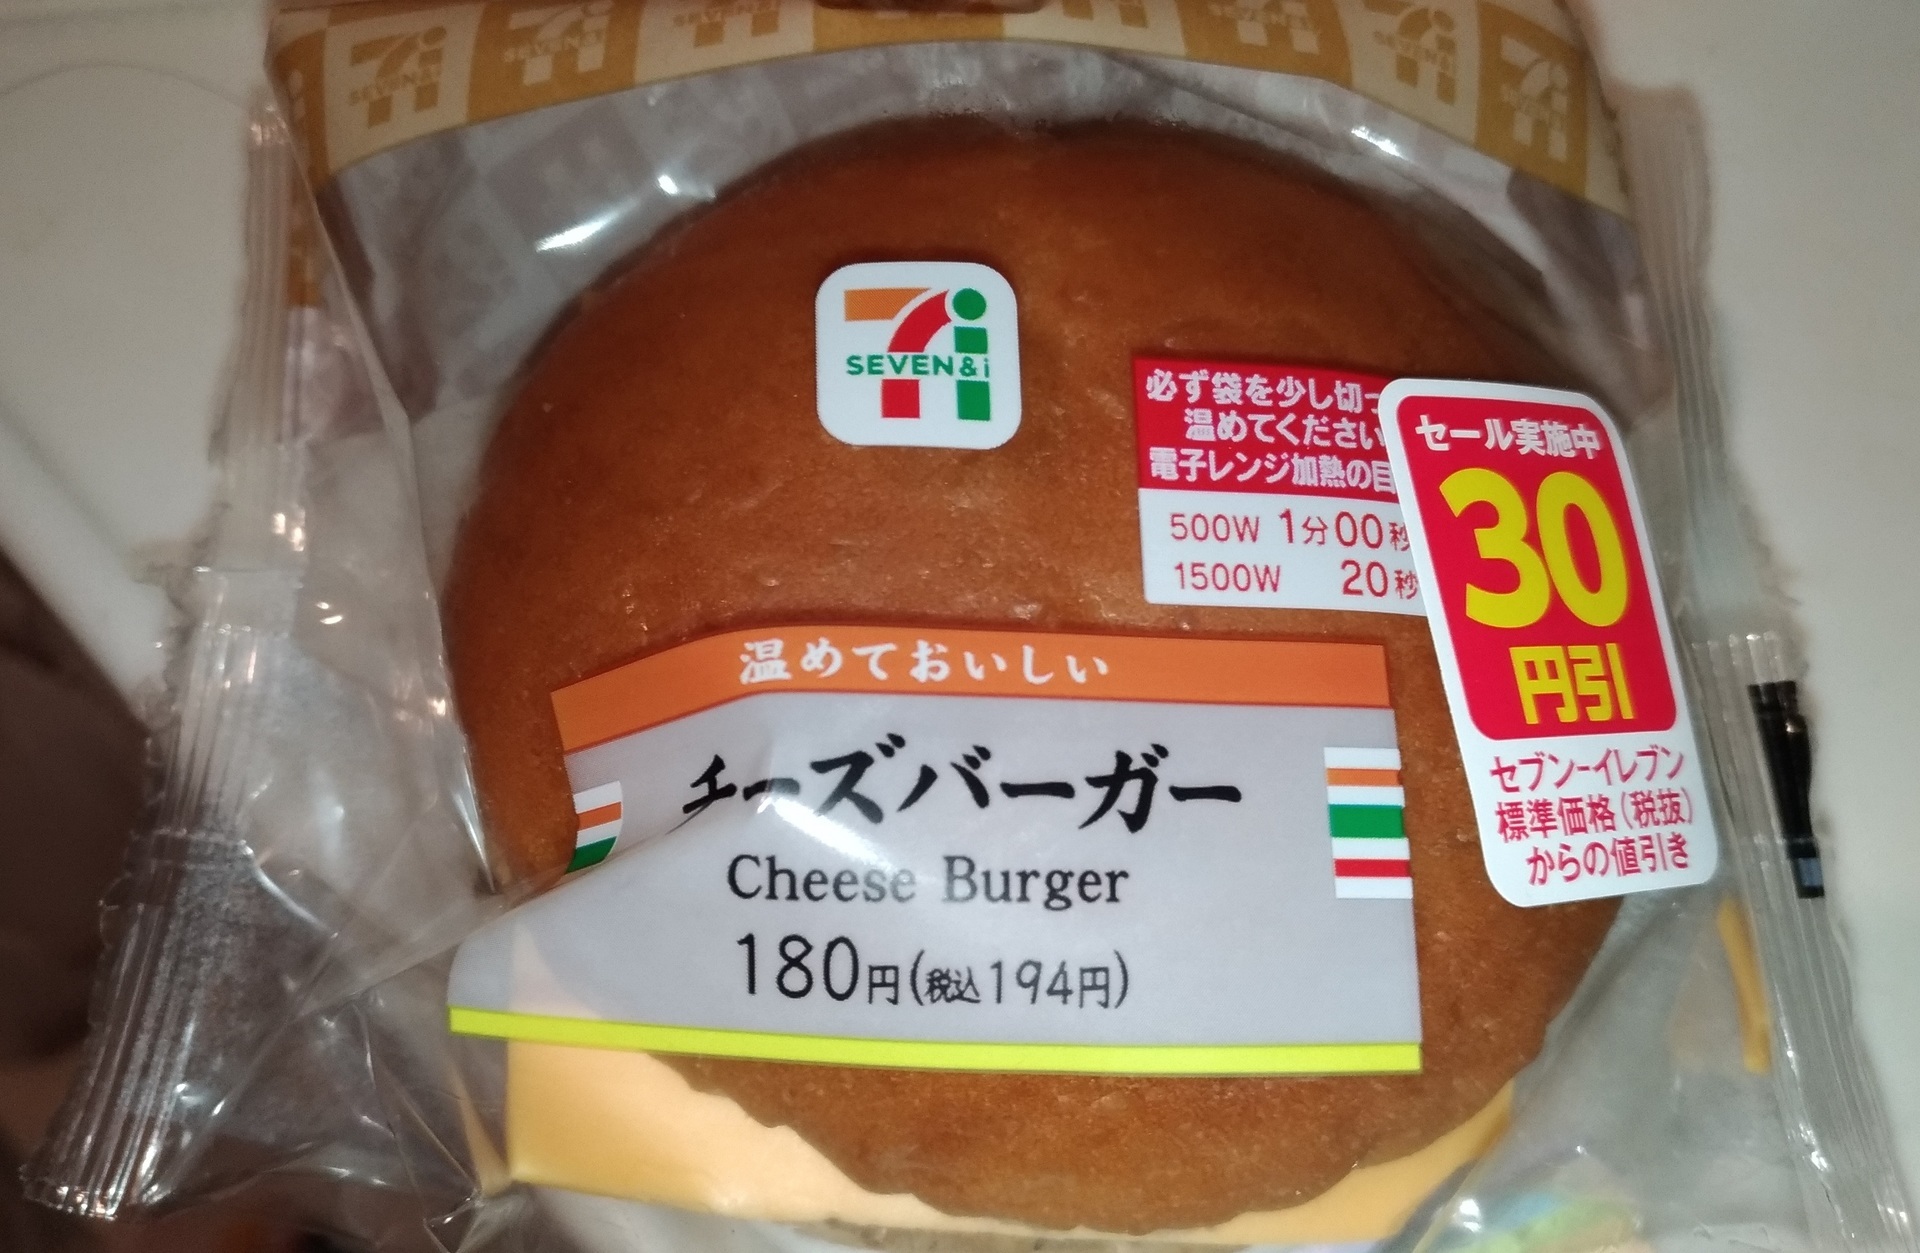 ハンバーガー セブンイレブン30円引き初めて買ってみた